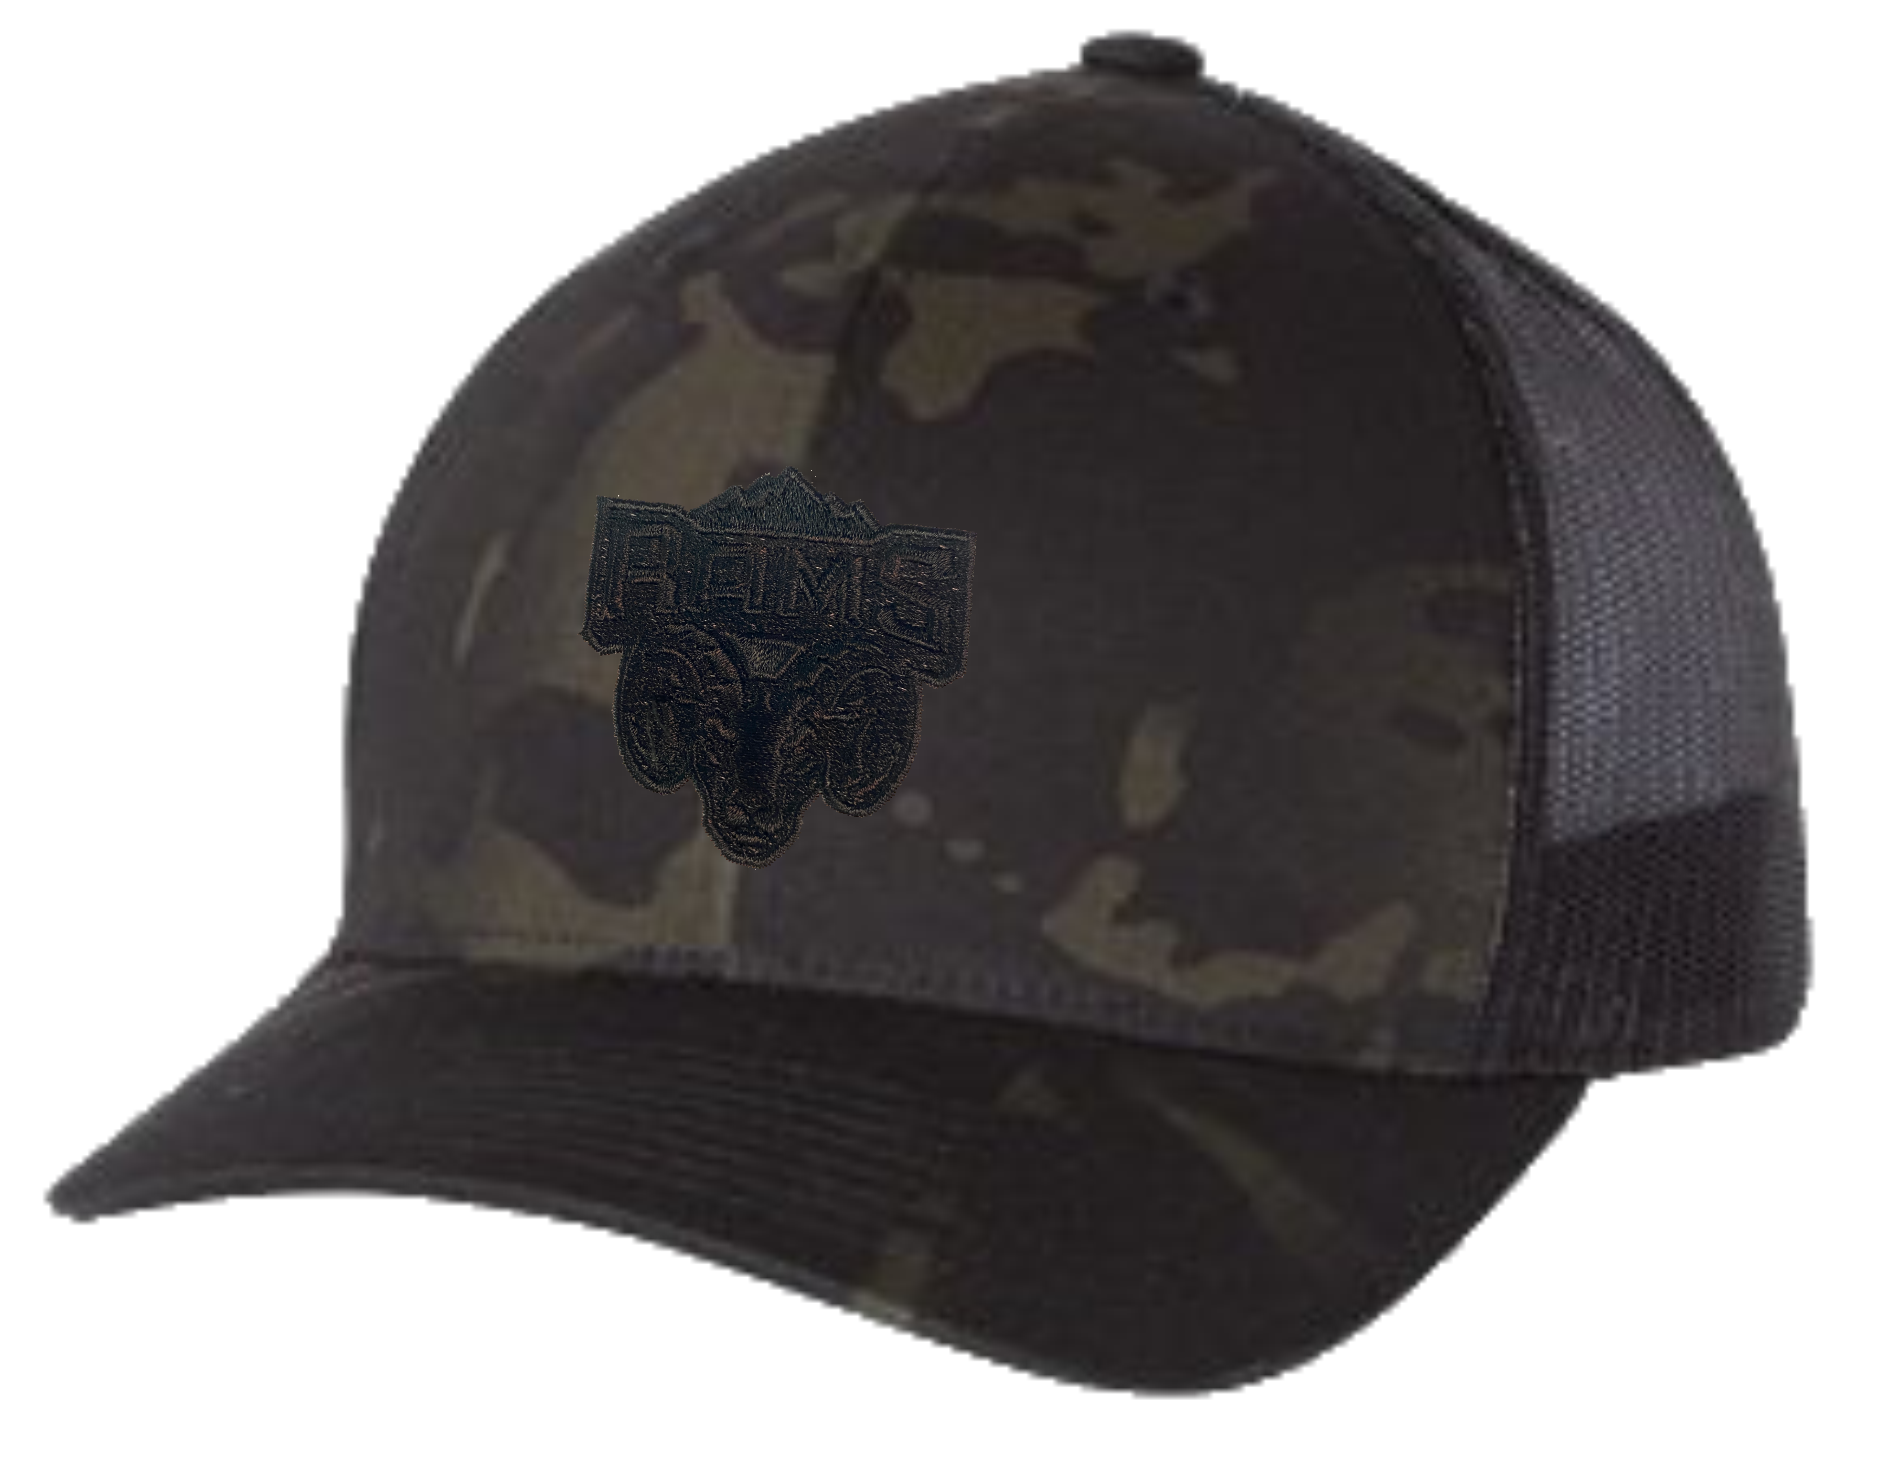 Mount Doug Rams Football Snapback Hats